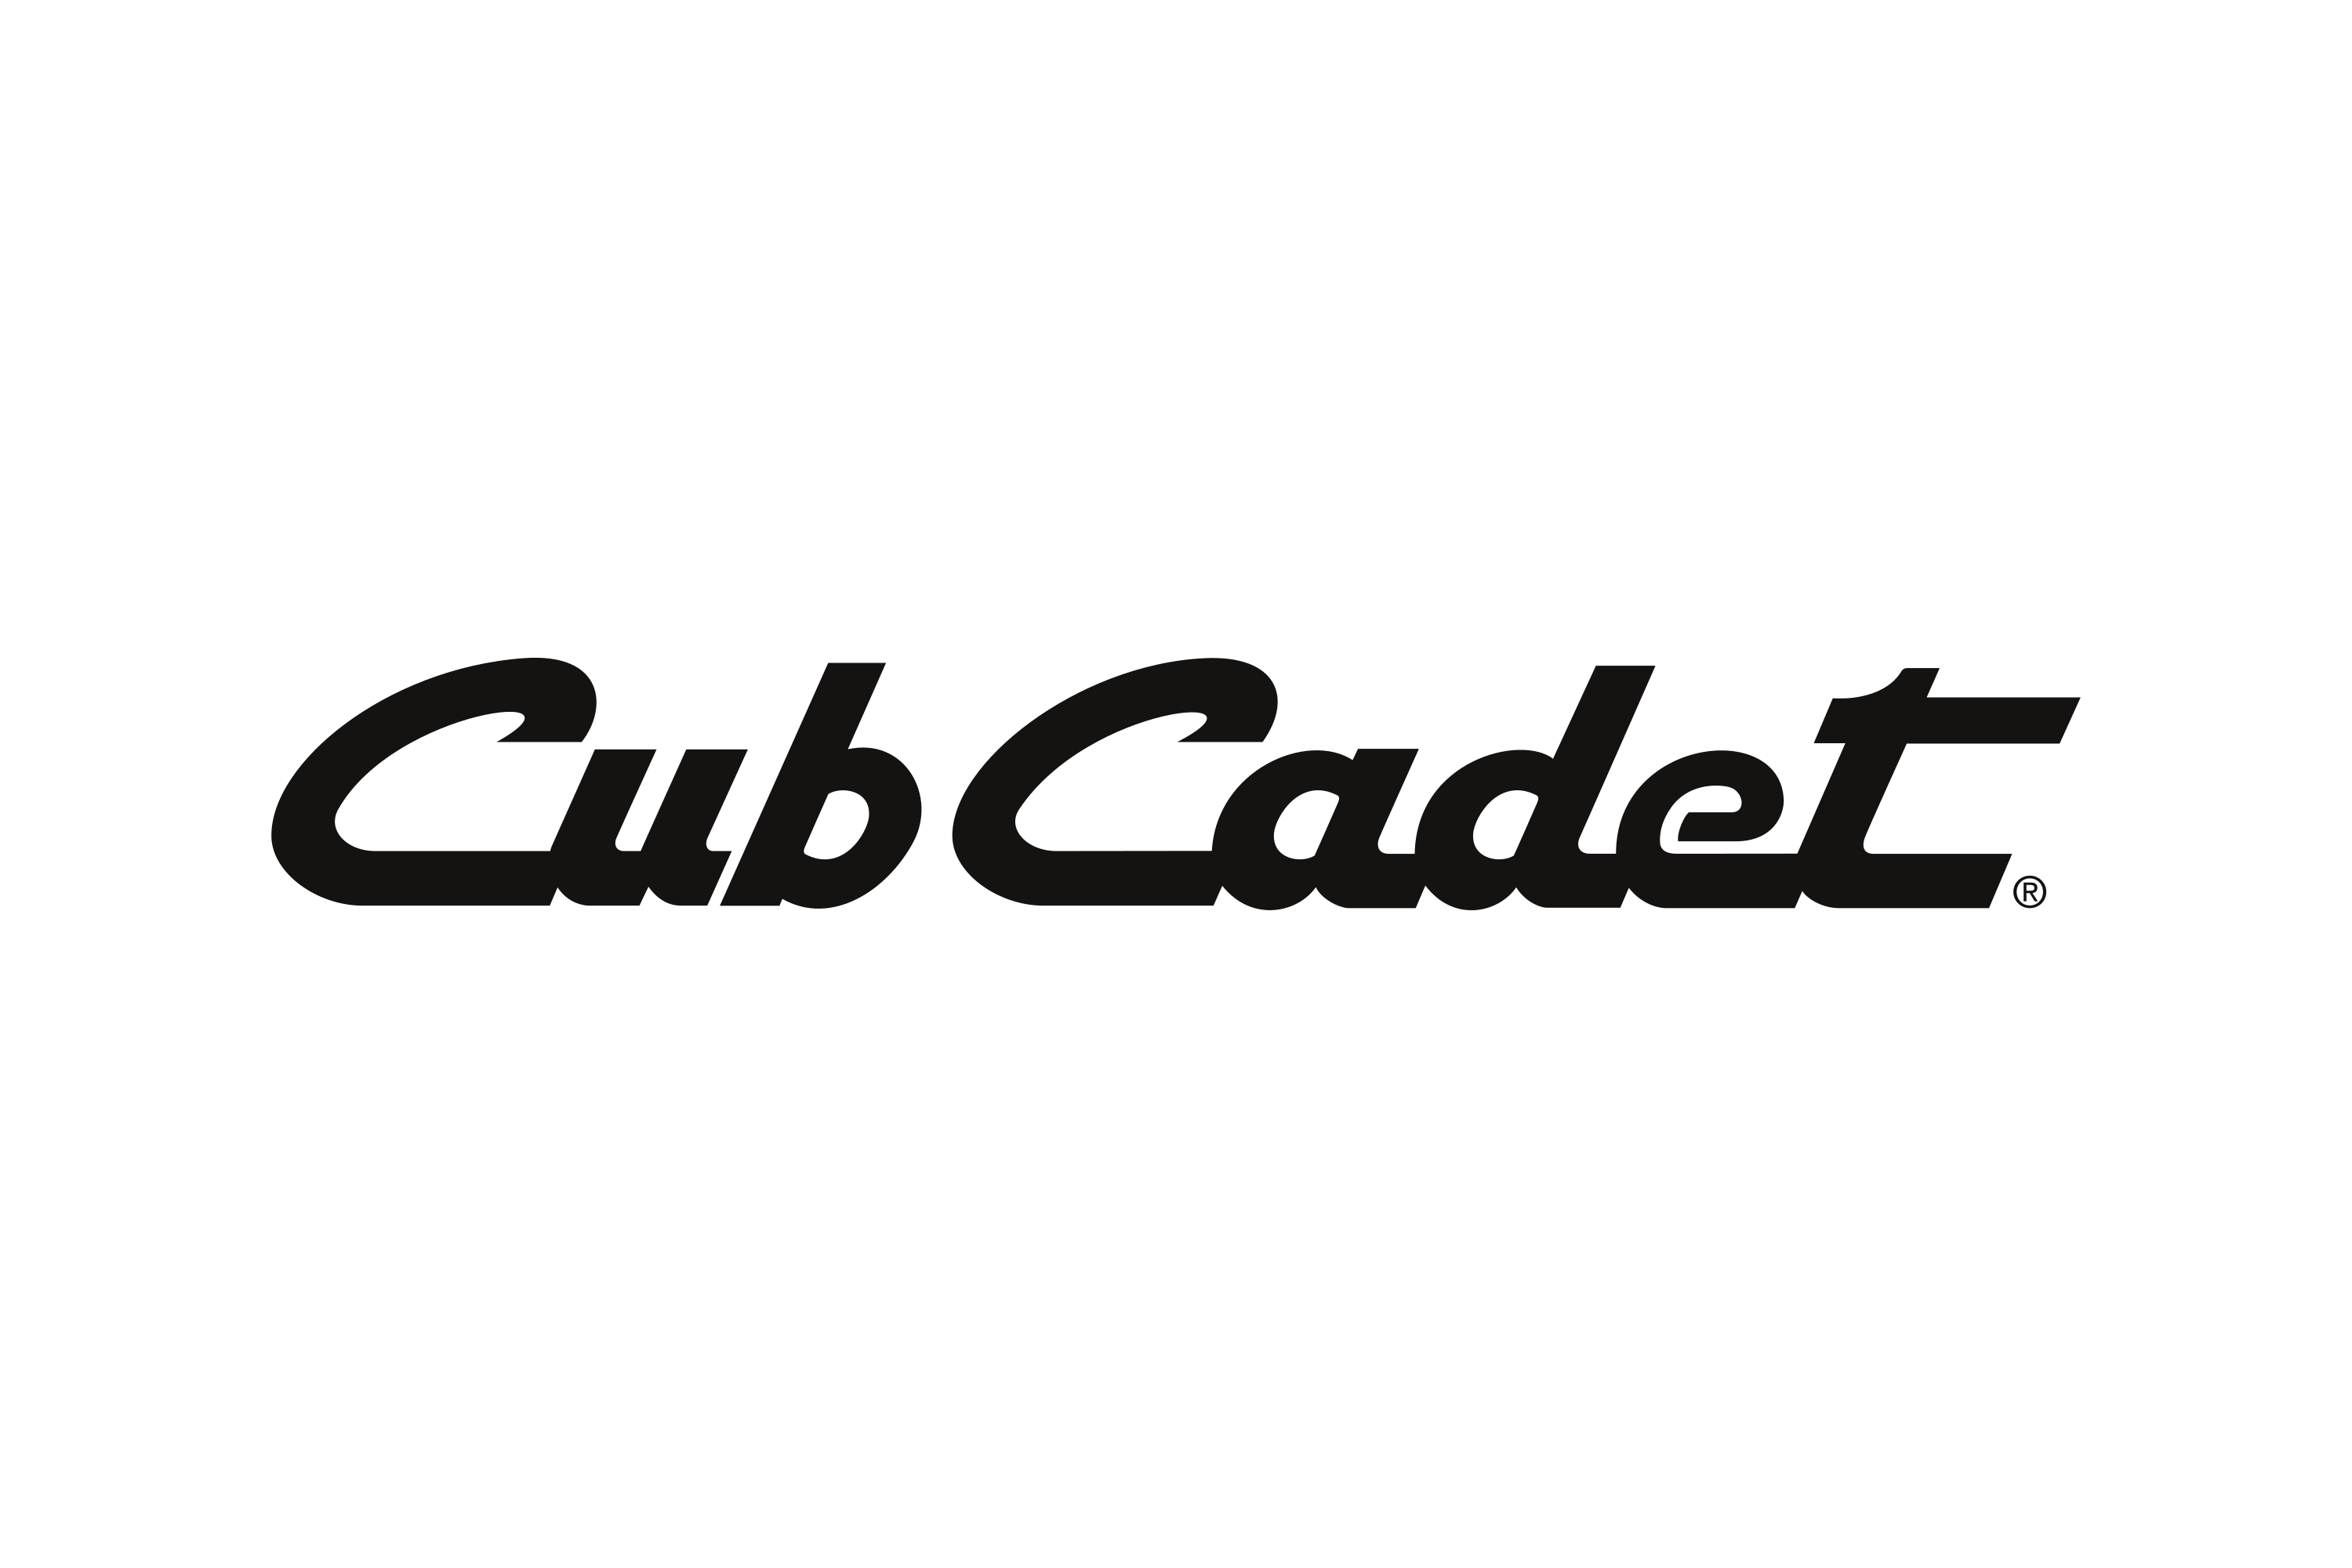 Cub Cadet - Booth #1435